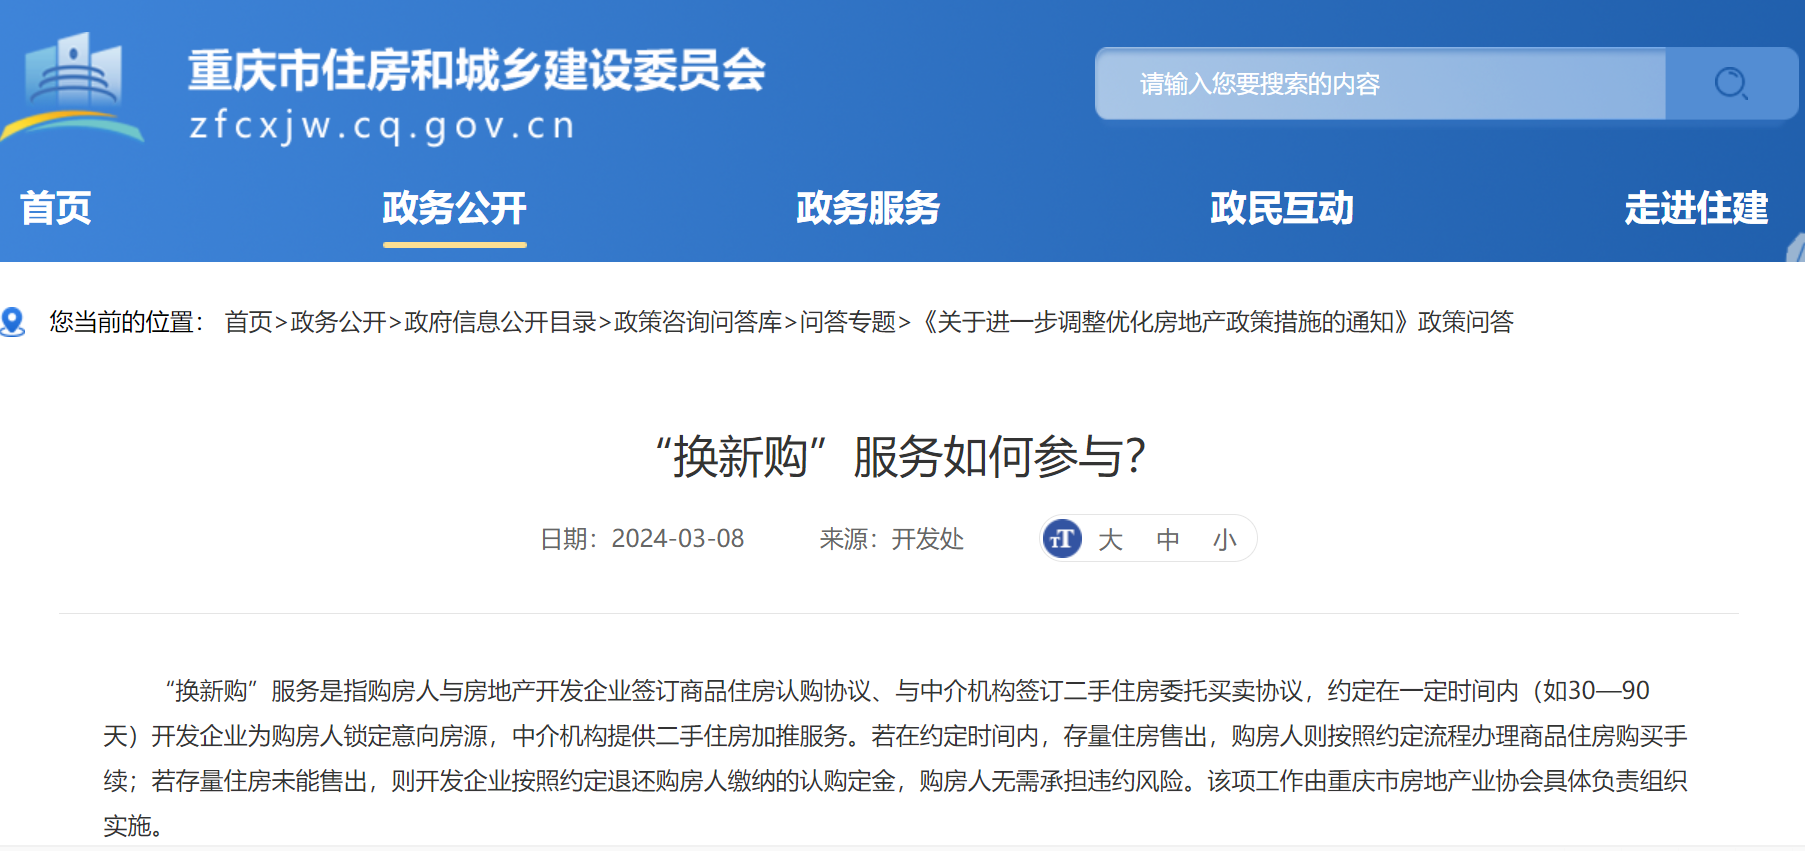 来源：重庆市住房和城乡建设委员会官网